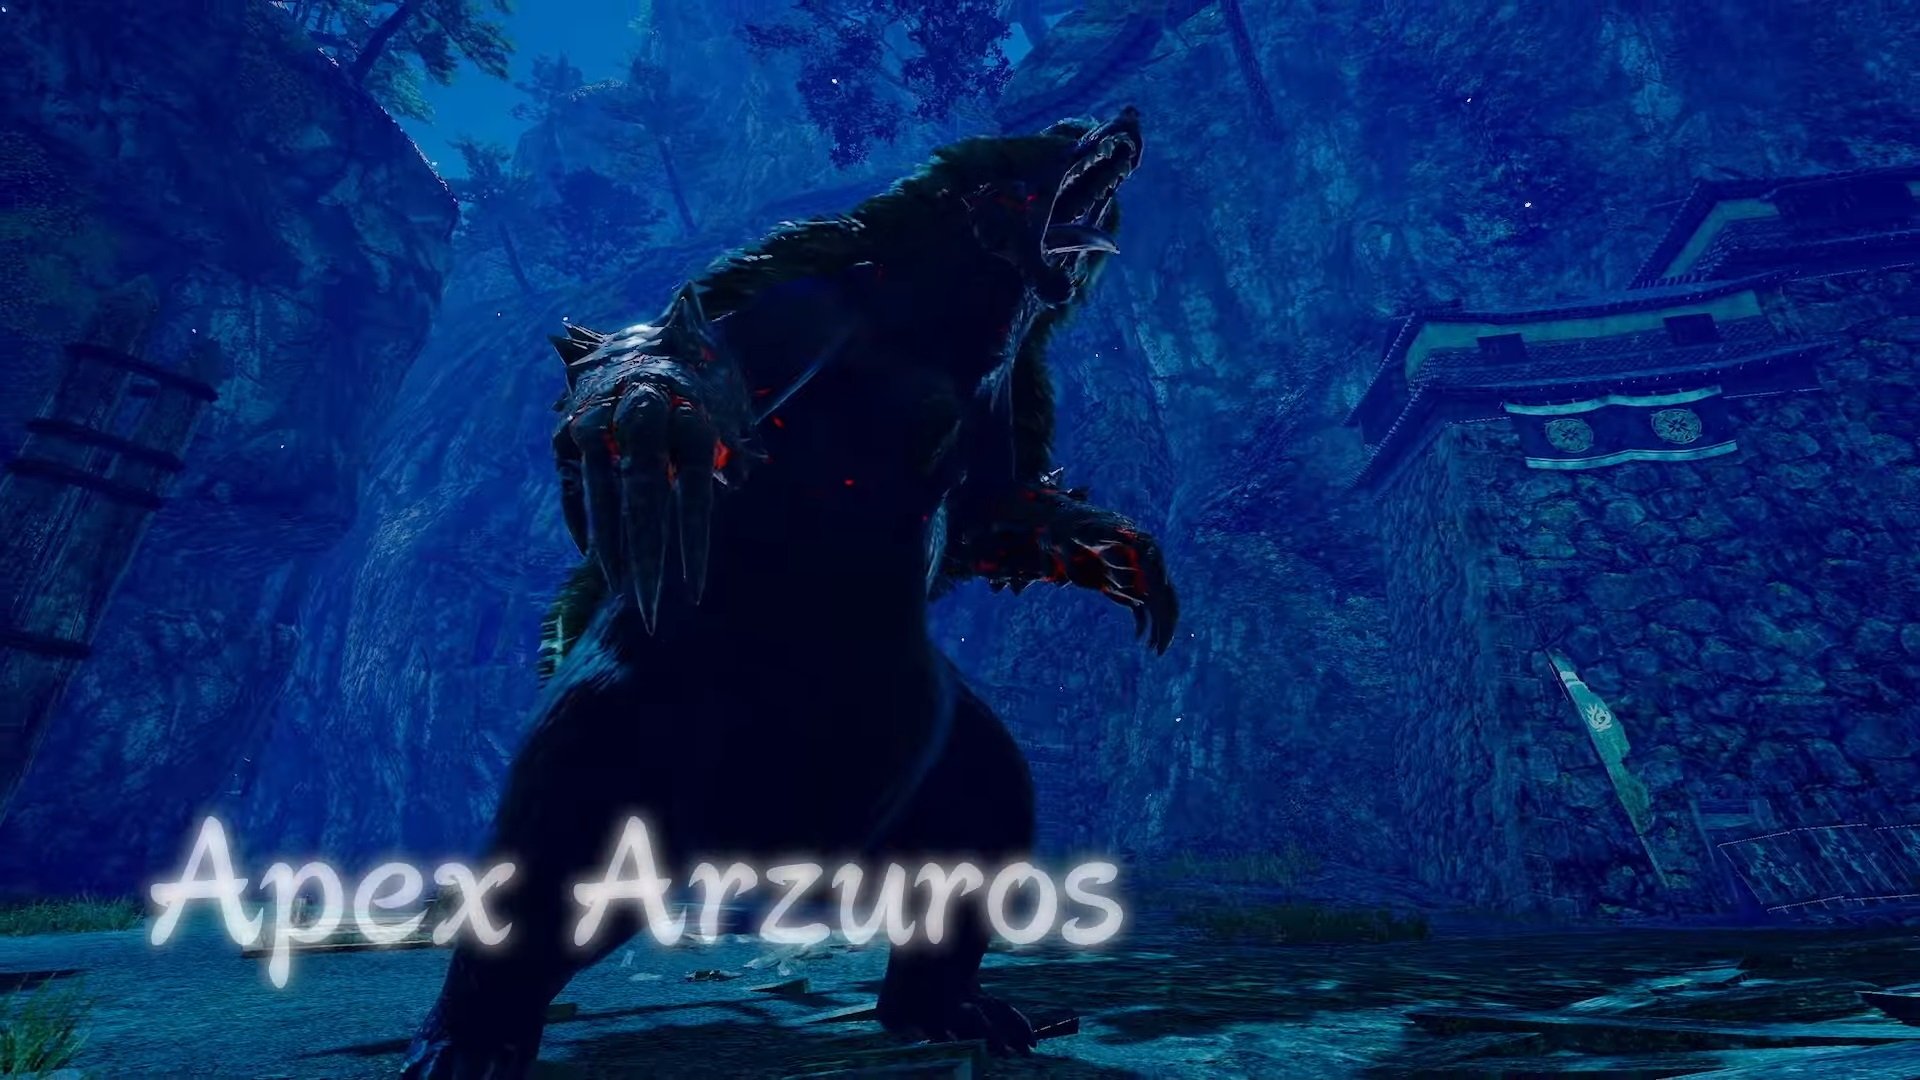 An Apex Arzuros roaring